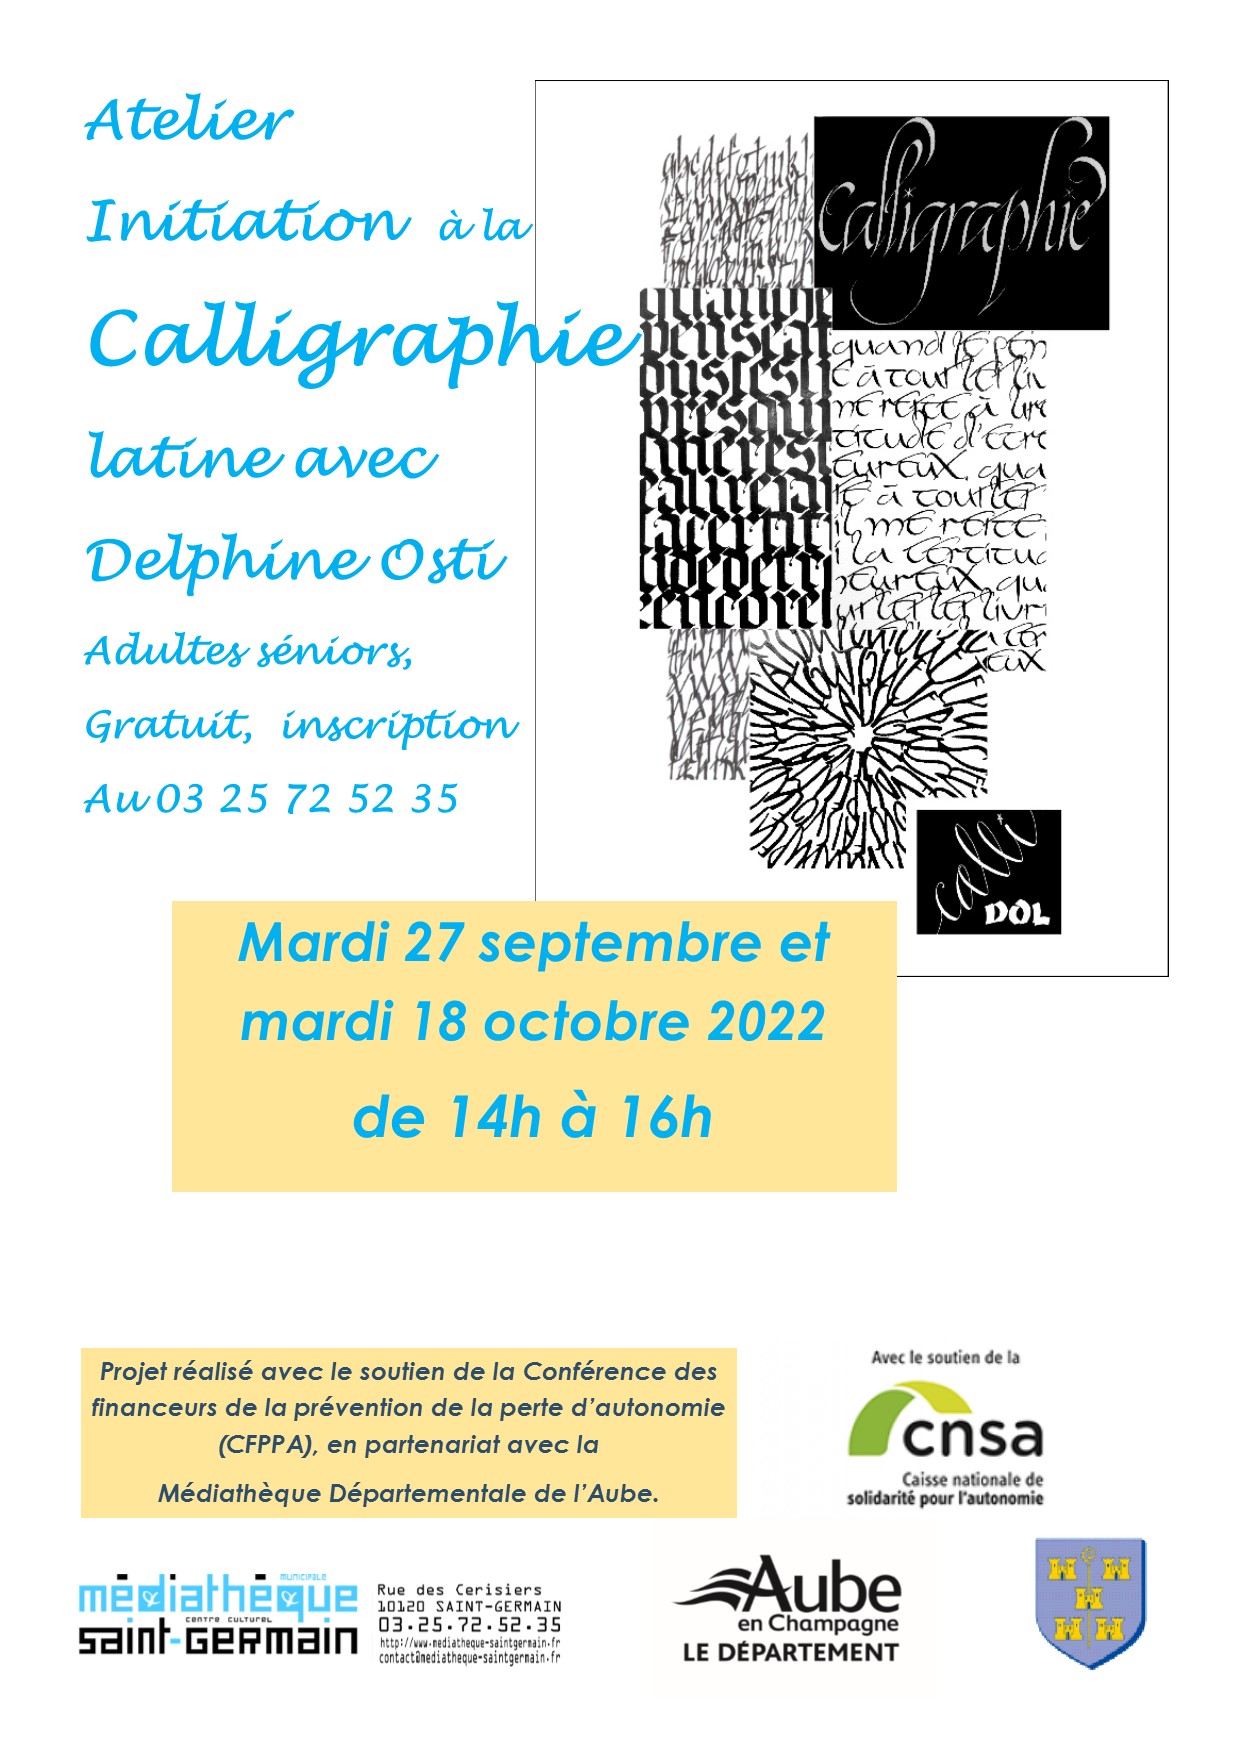 Atelier Initiation à la Calligraphie mardi 27 septembre et 18 octobre 2022